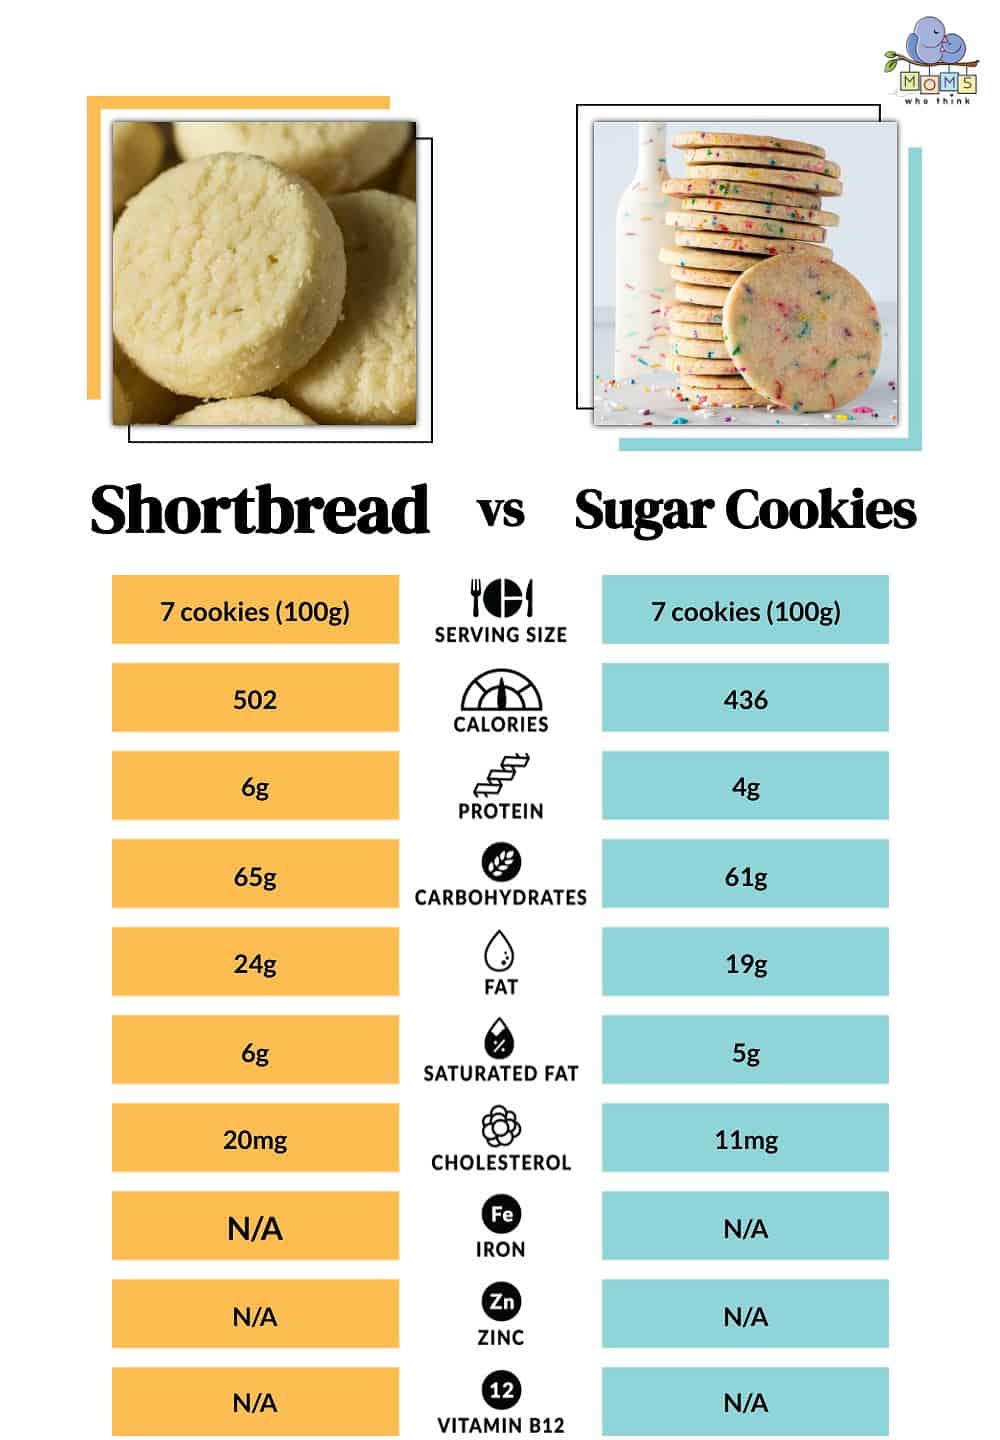 Shortbread vs Sugar Cookies Nutritional Comparison